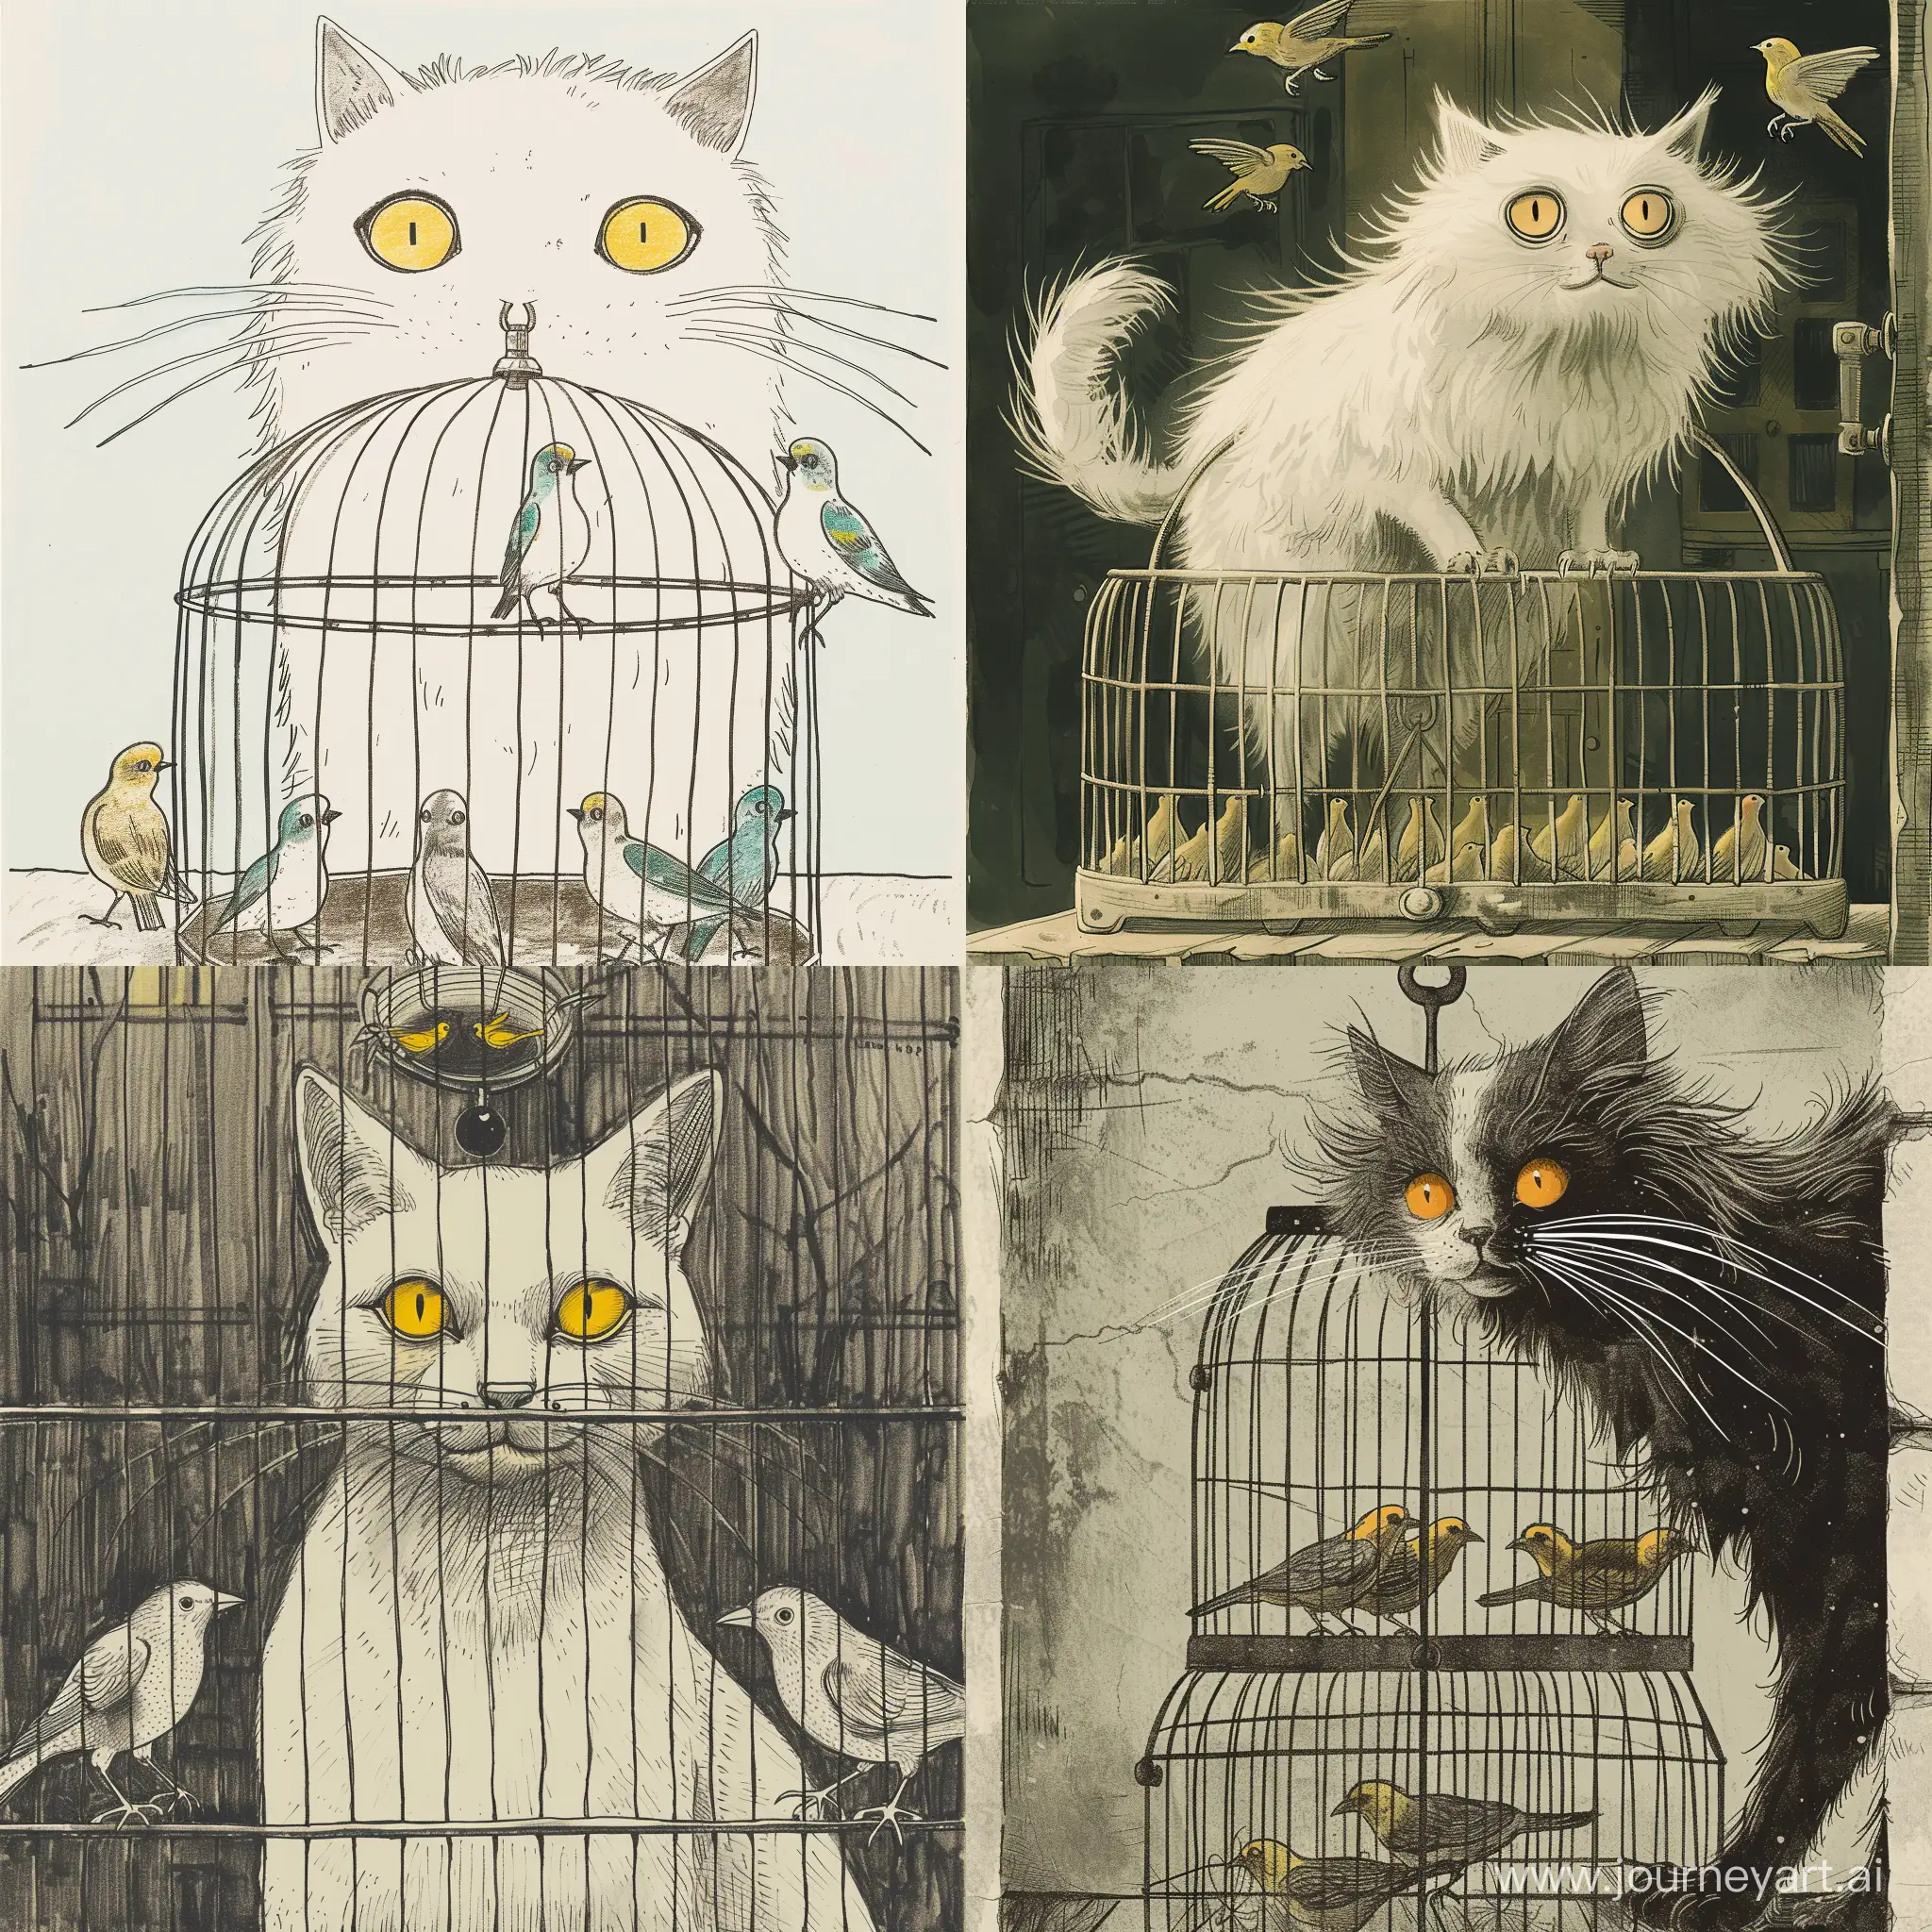 ارسم باسلوب رواية قطة بيضاء، عيونها صفراء اللون، فروها ليس طويل جدا ، تقف فوق قفص فيه طيور كناري 